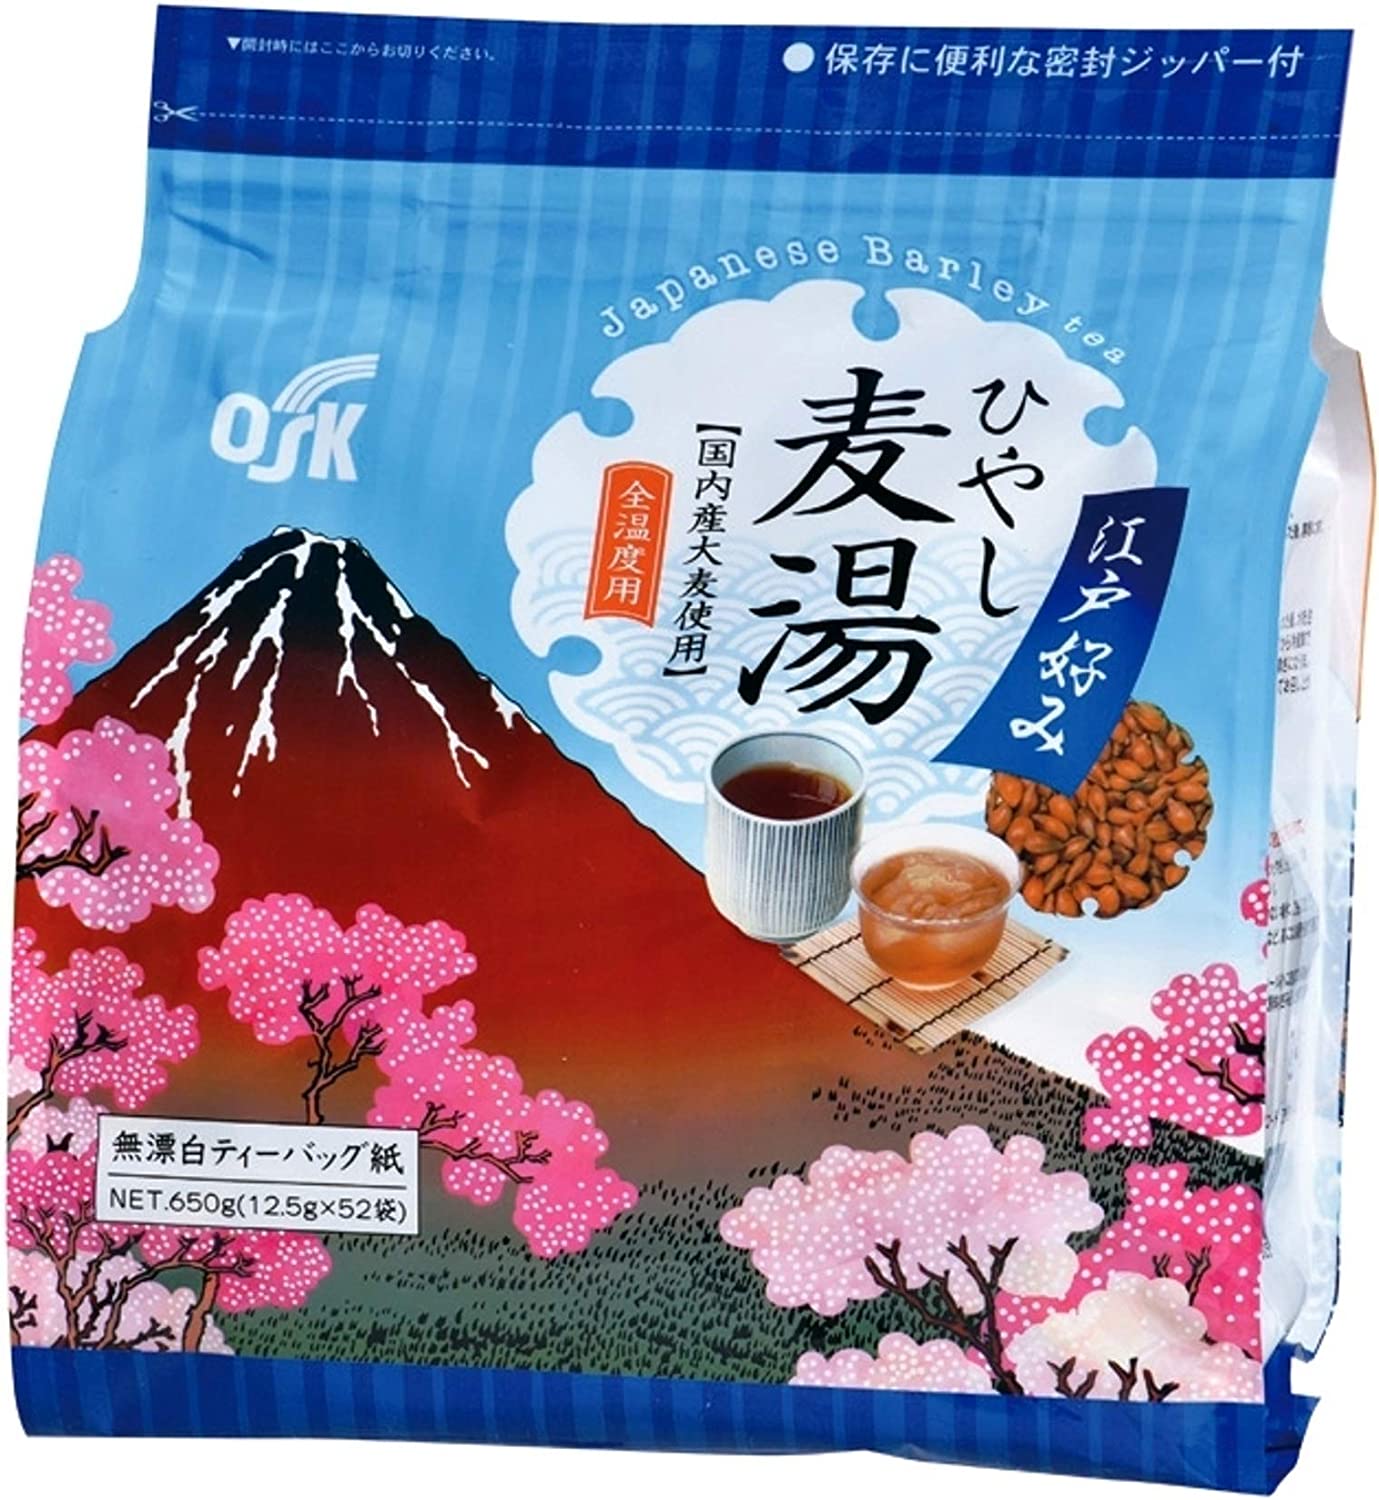 OSK Rojo Barley Tea Edo’s Favorite Hiyashi Barley Tea 12.5g × 52 Teabags - NihonMura